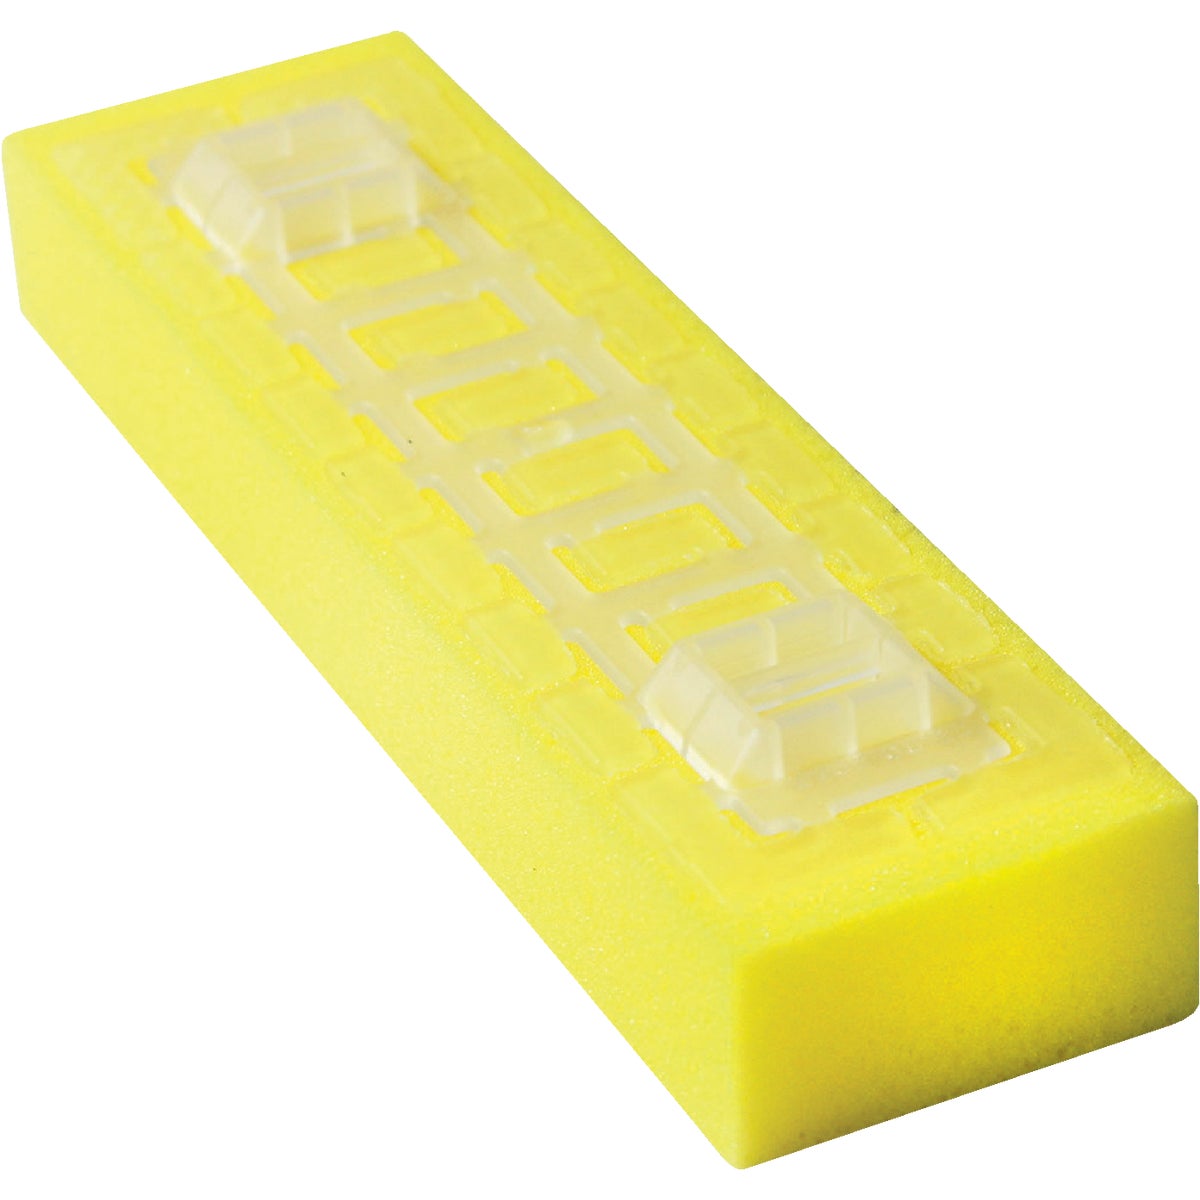 Item 646237, Cellulose sponge mop refill for Do it Best sponge mop.